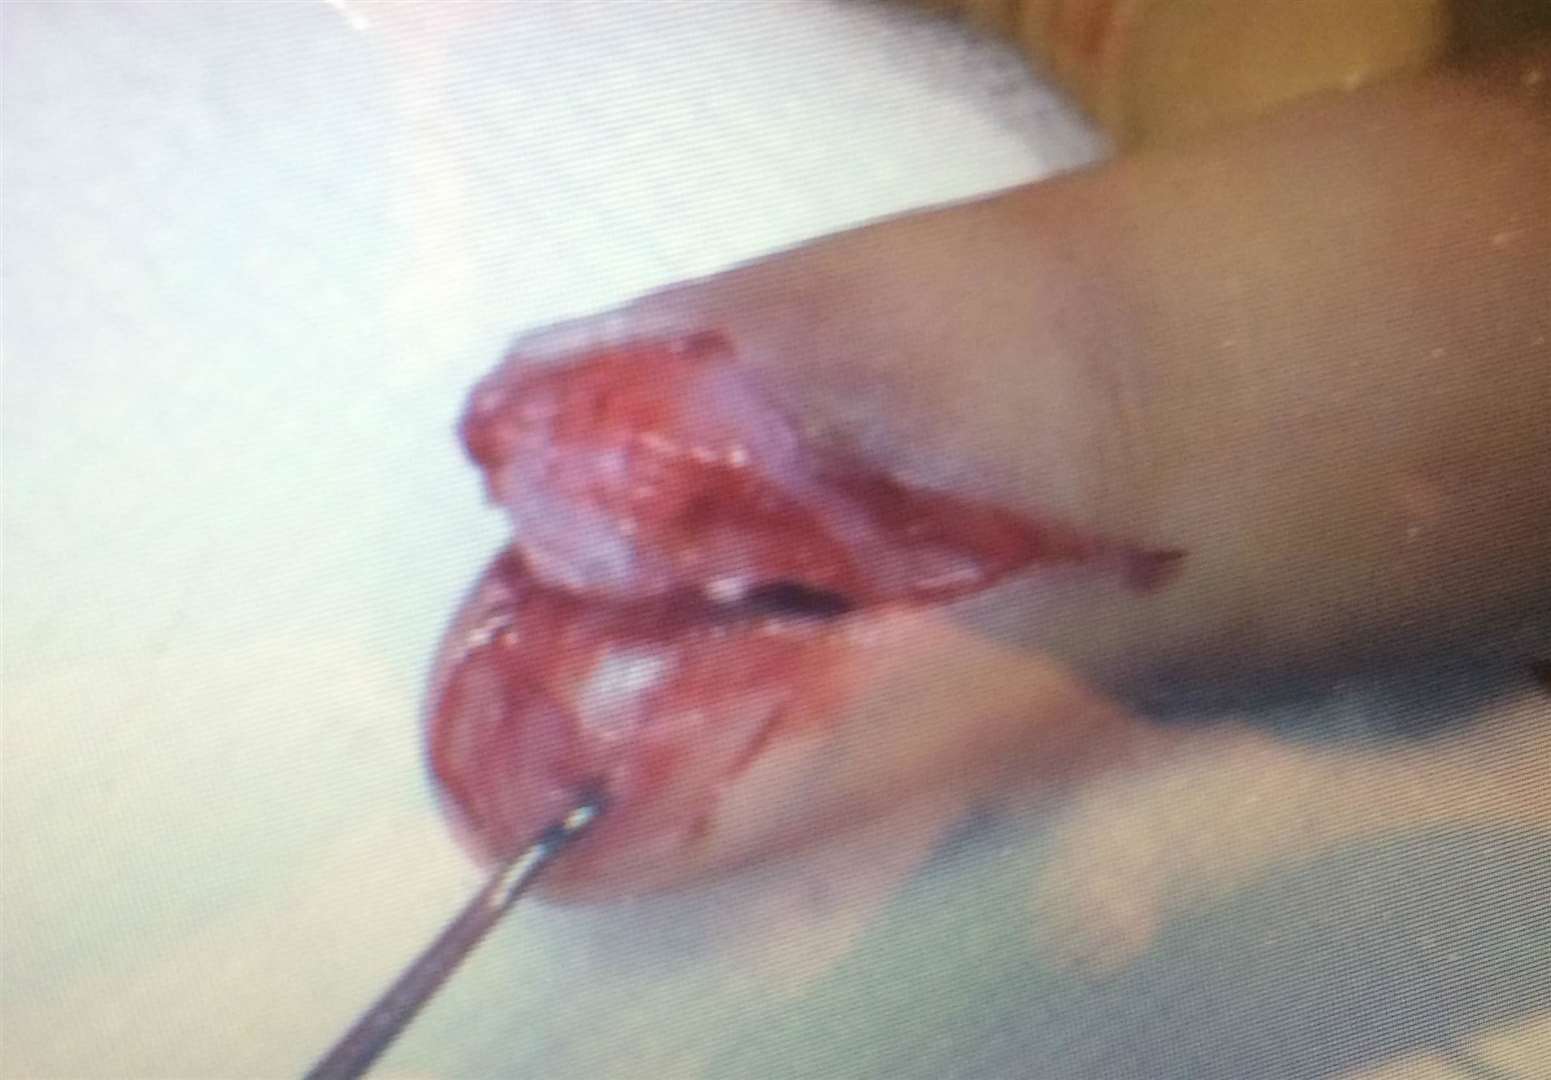 The injured finger